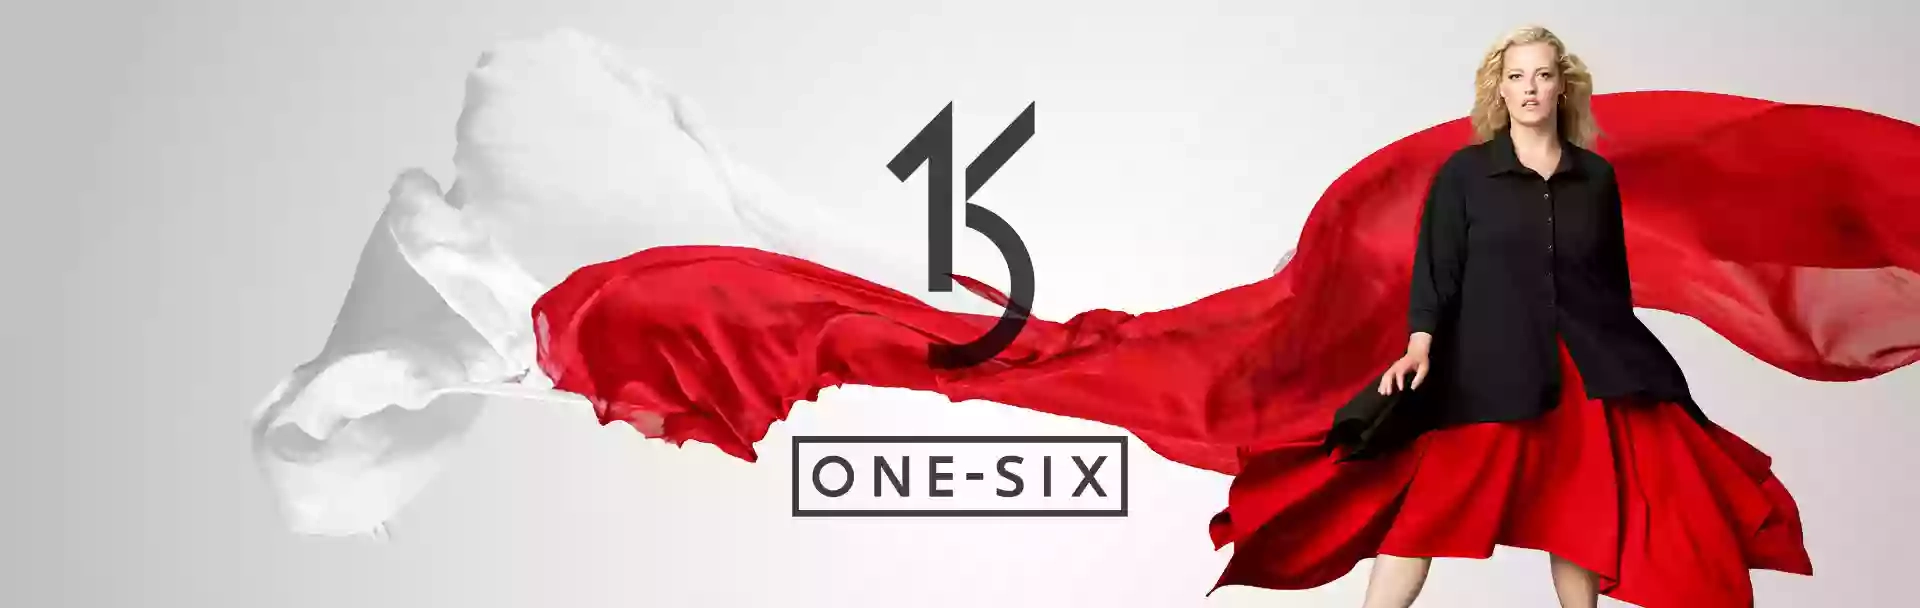 One Six